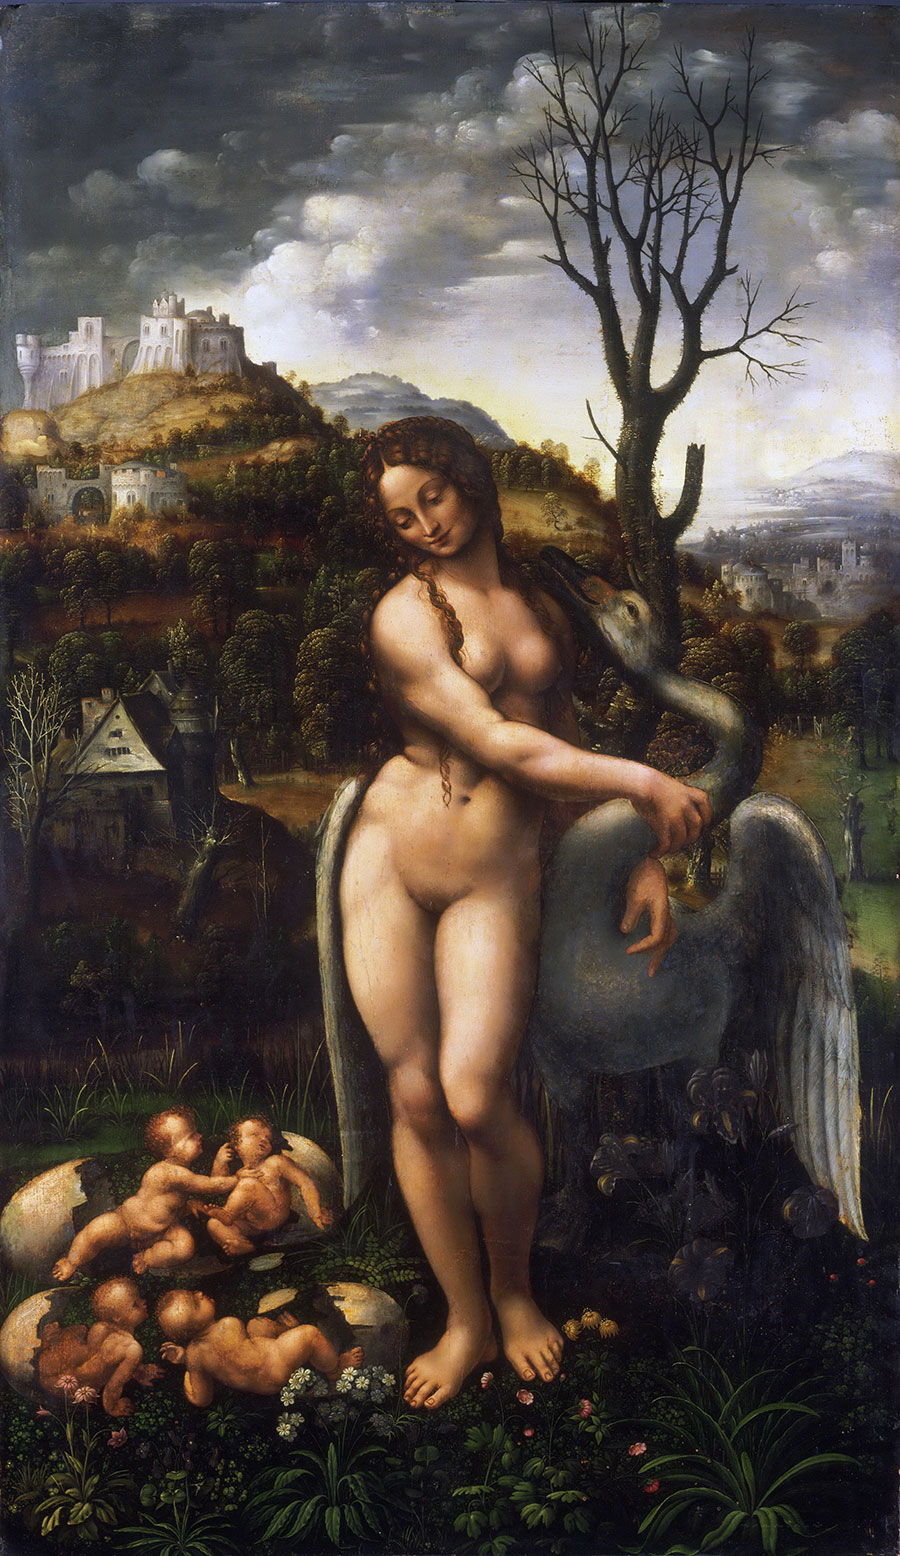 达芬奇作品  丽达与天鹅  高清油画大图欣赏